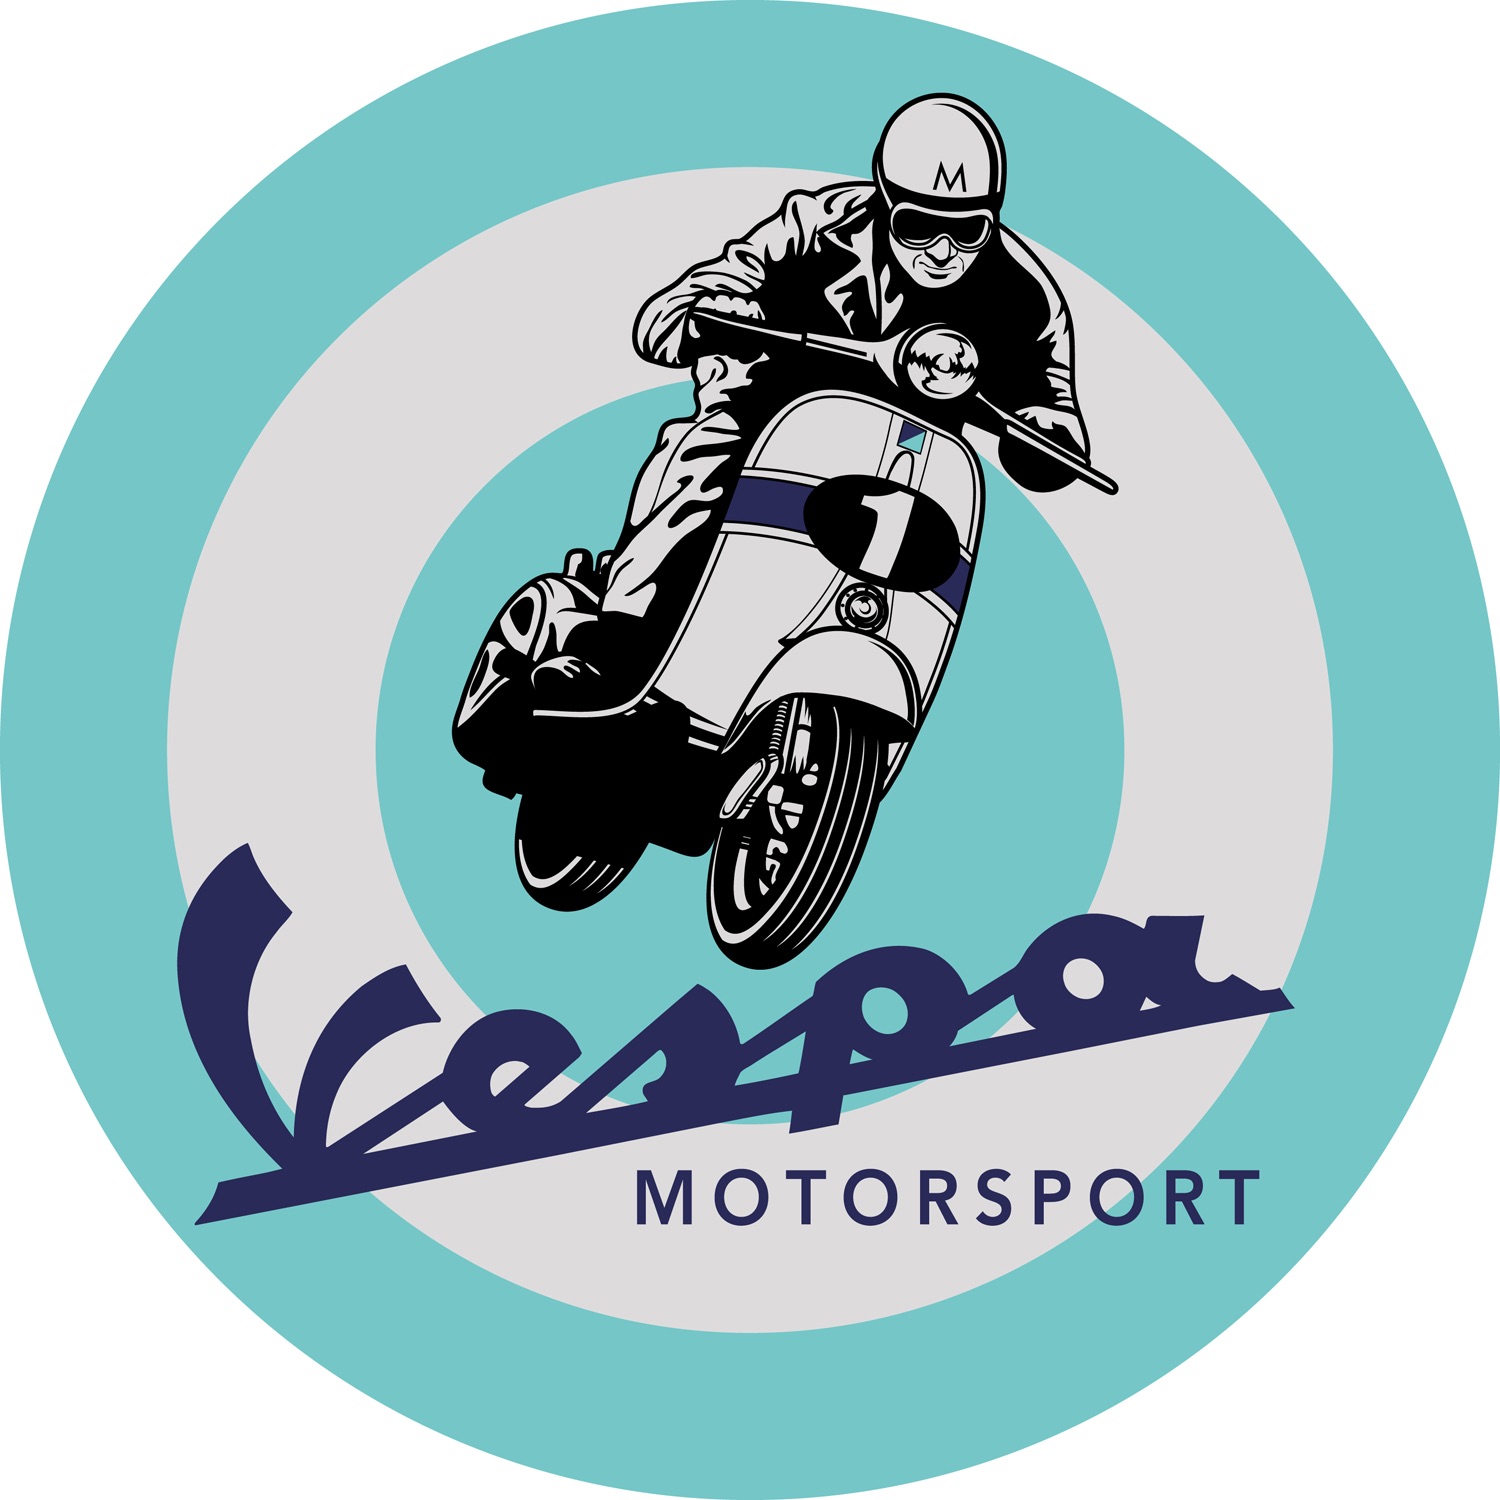 Vespa Motorsport Podcast